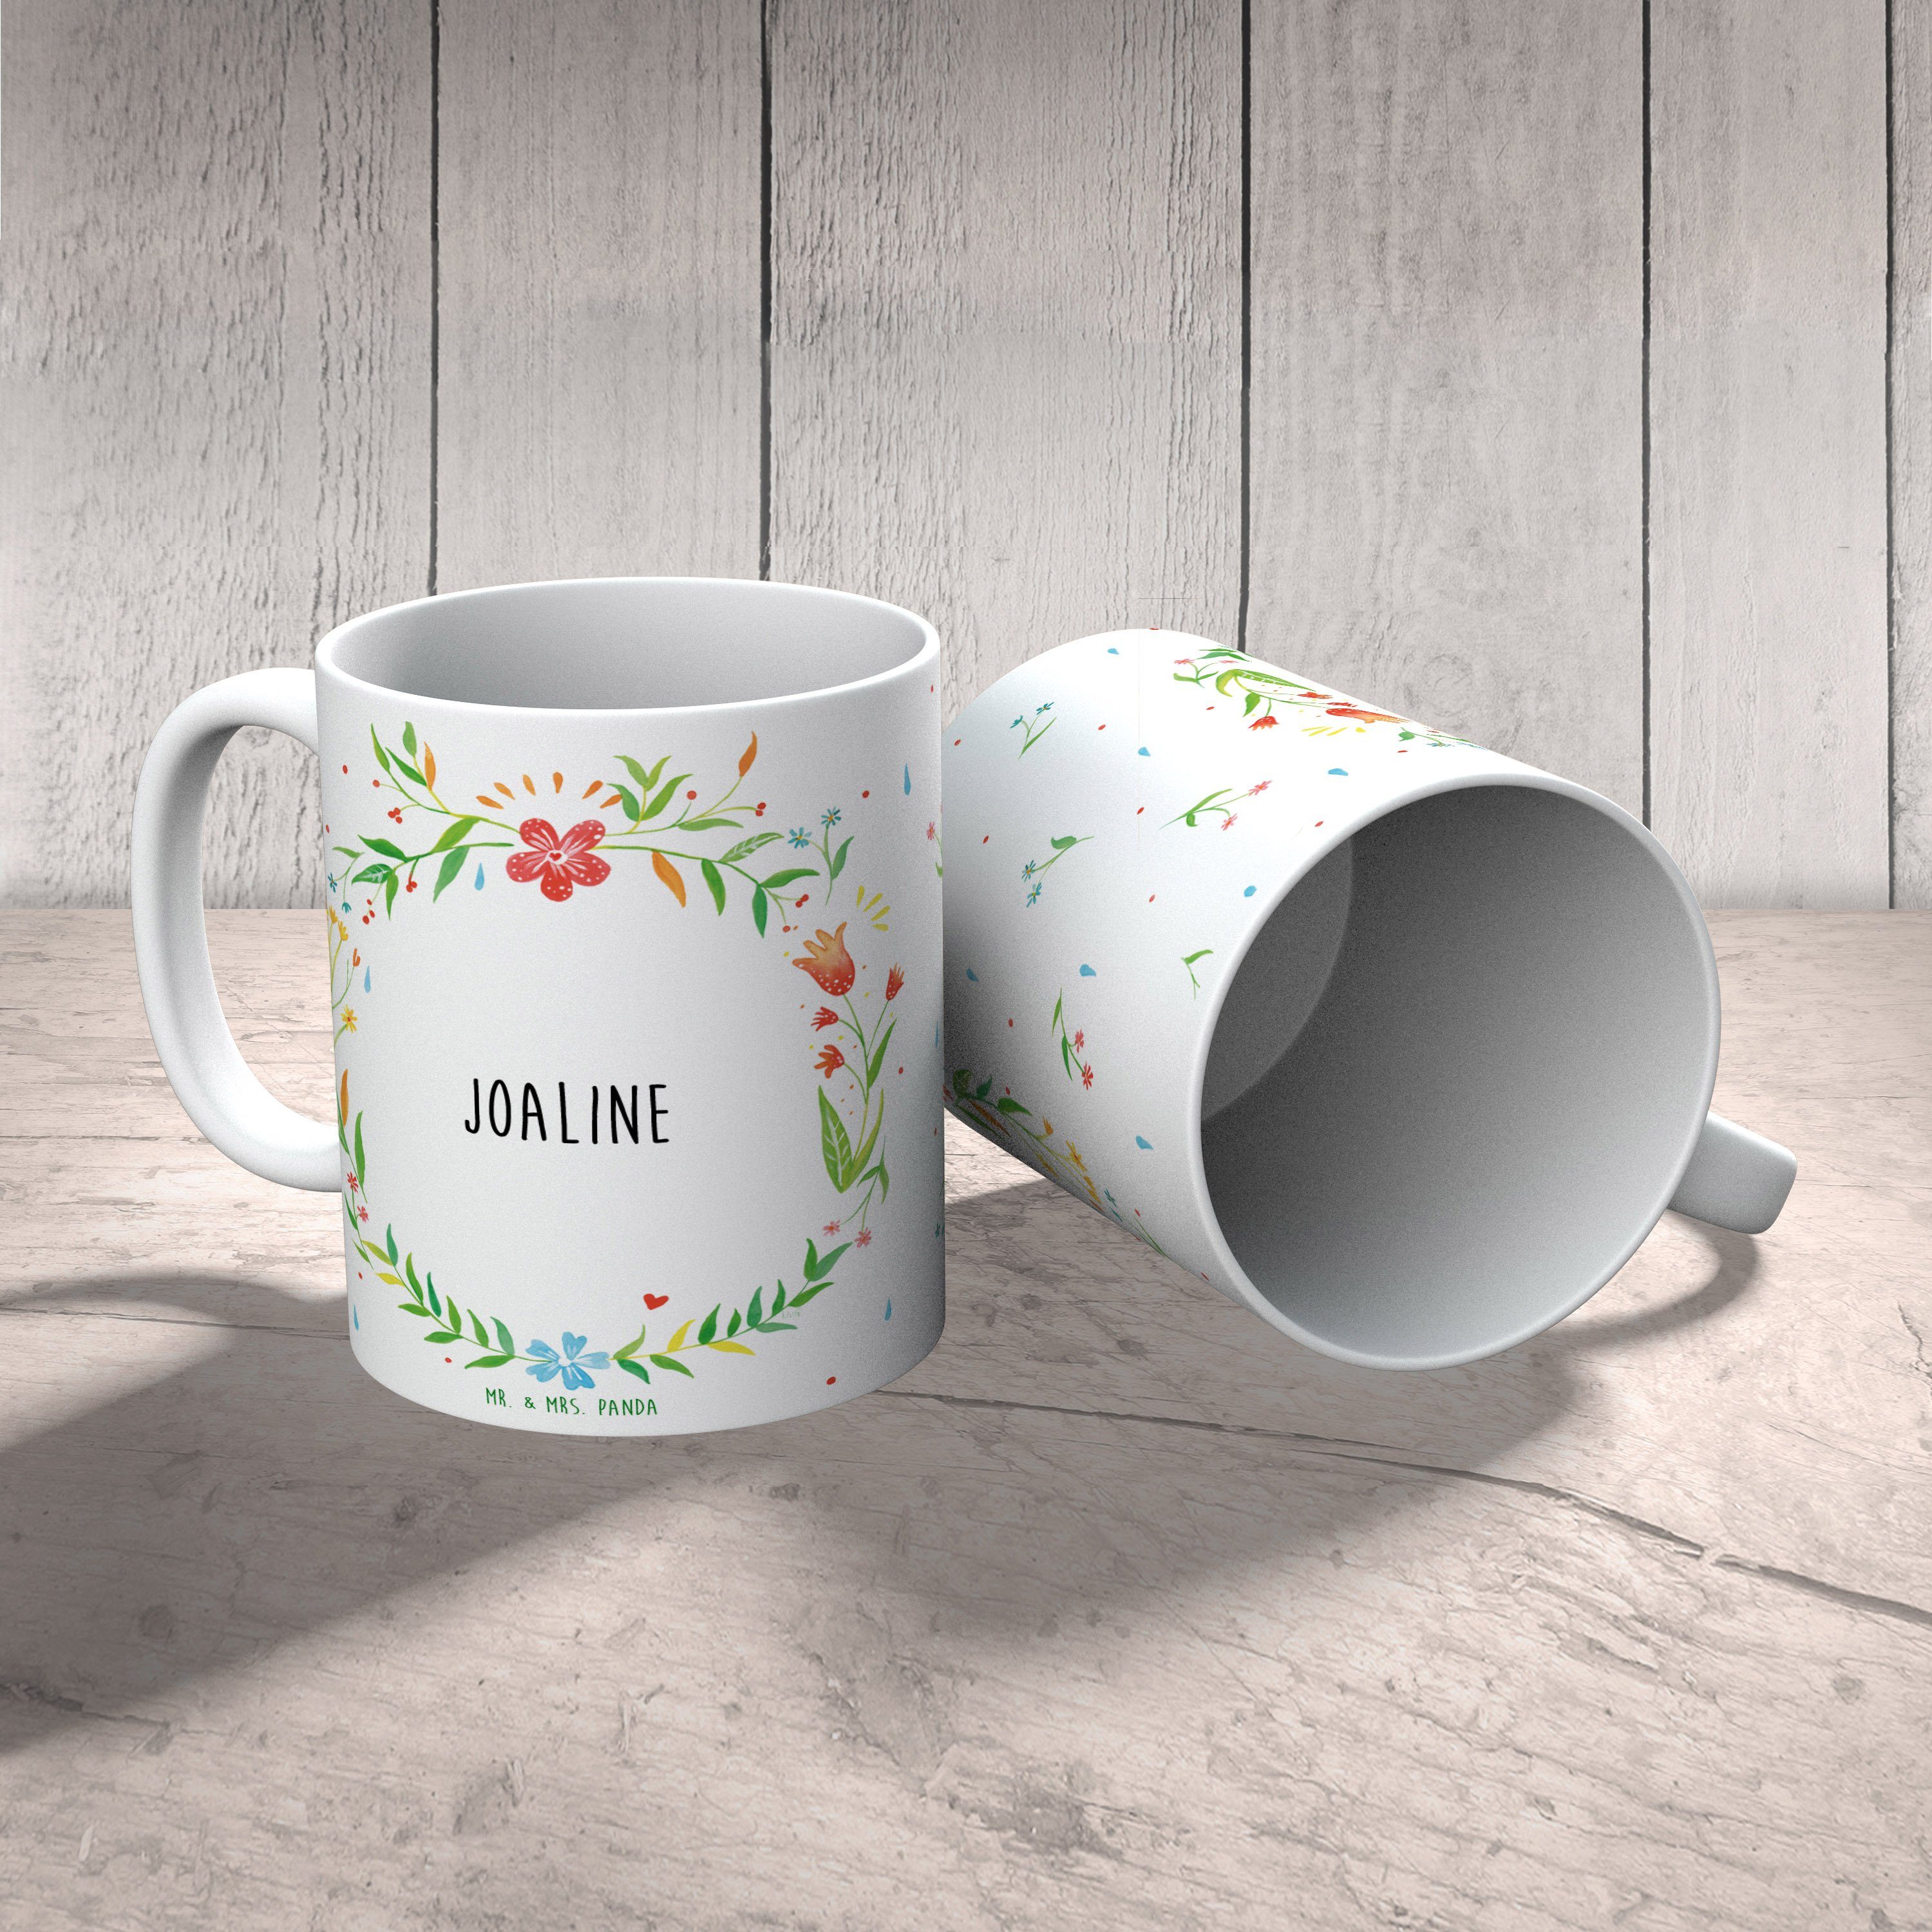 Mr. & Mrs. Panda Tasse Tasse, Kaffeetasse, Kaffeebecher, Keramik Tasse, Joaline - Geschenk, Geschenk